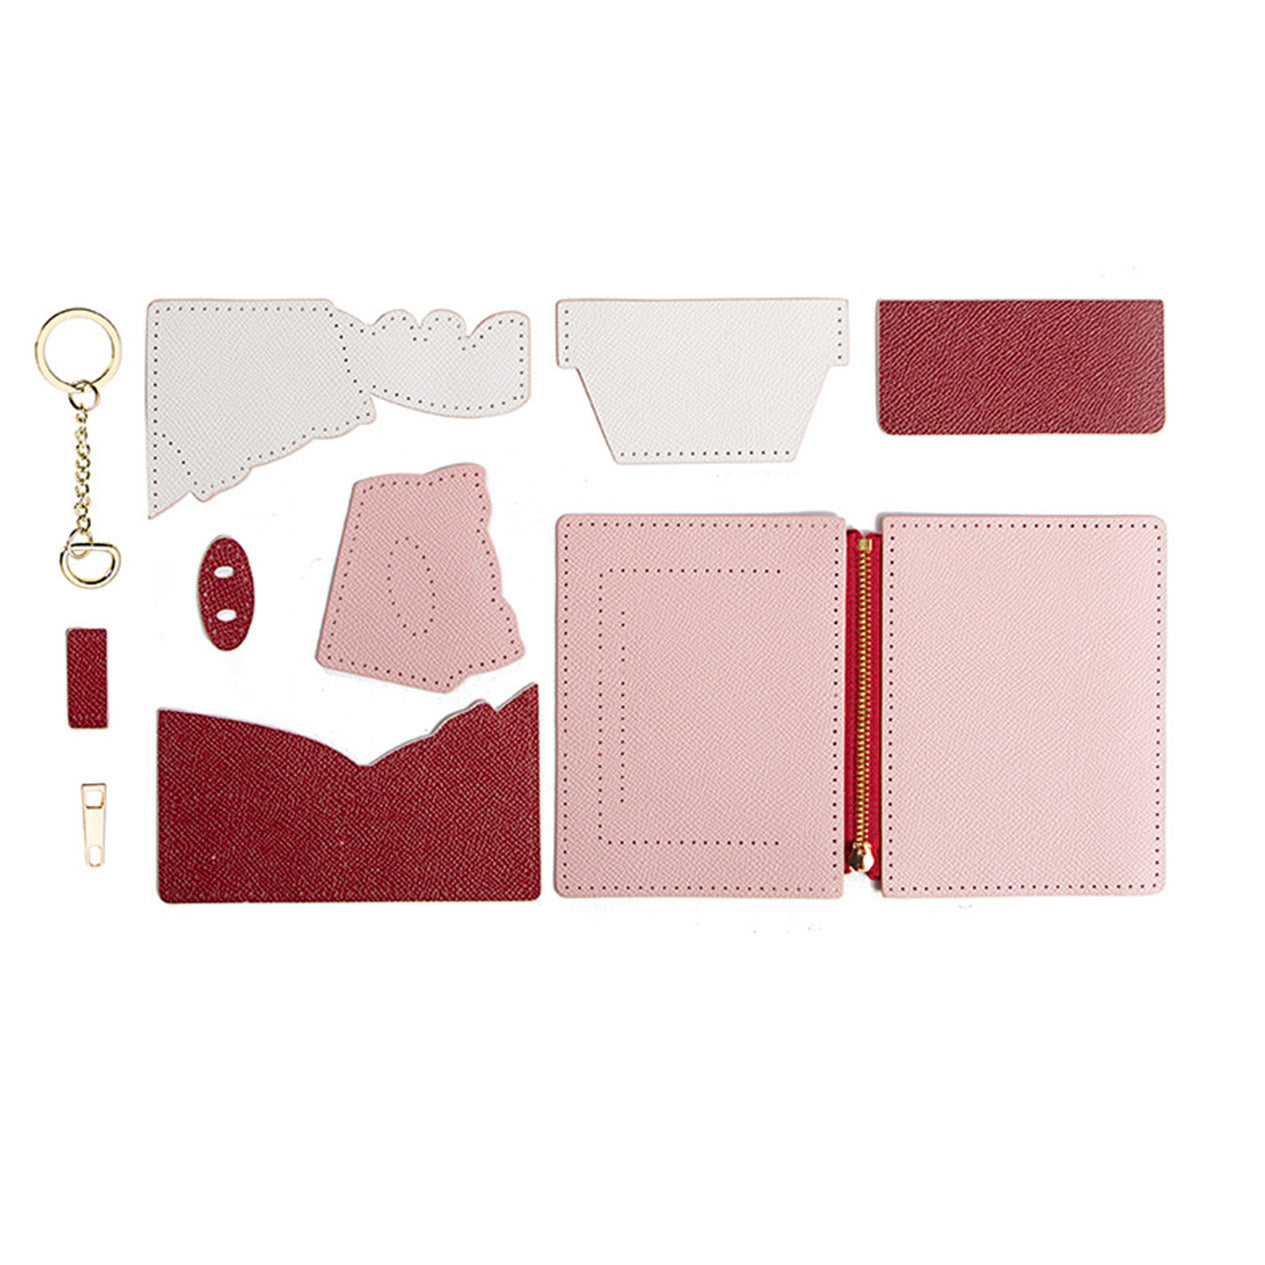 Making a DiY Louis Vuitton Cardholder Wallet (V2) 